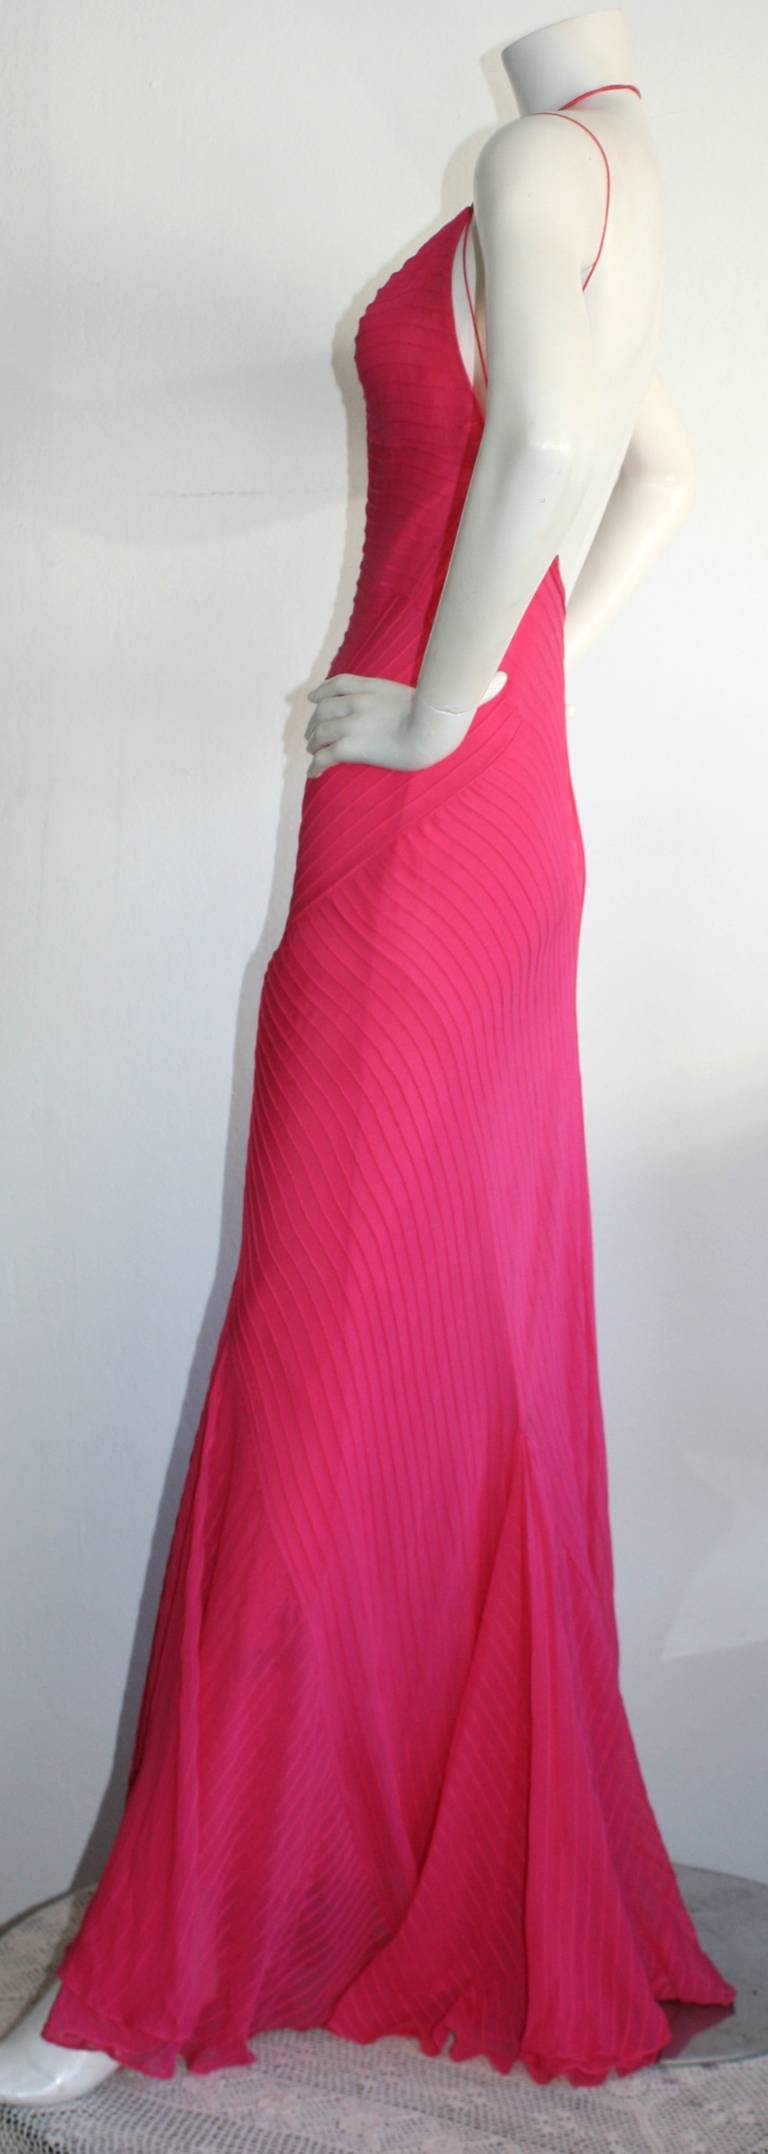 ralph lauren hot pink dress